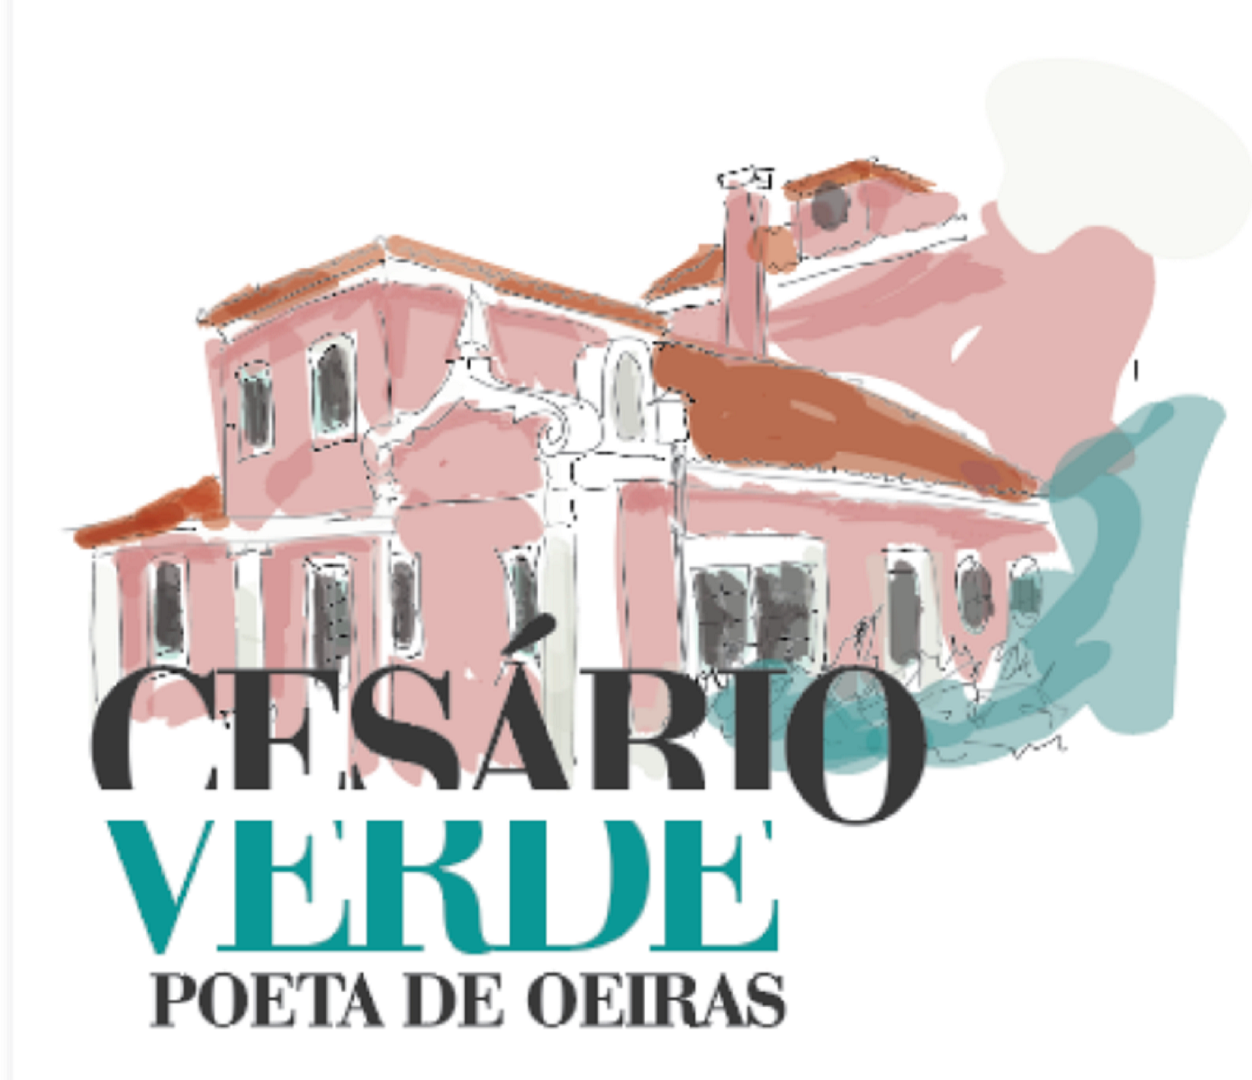 Cesário Verde, Poeta de Oeiras no programa Oeiras EDUCA+